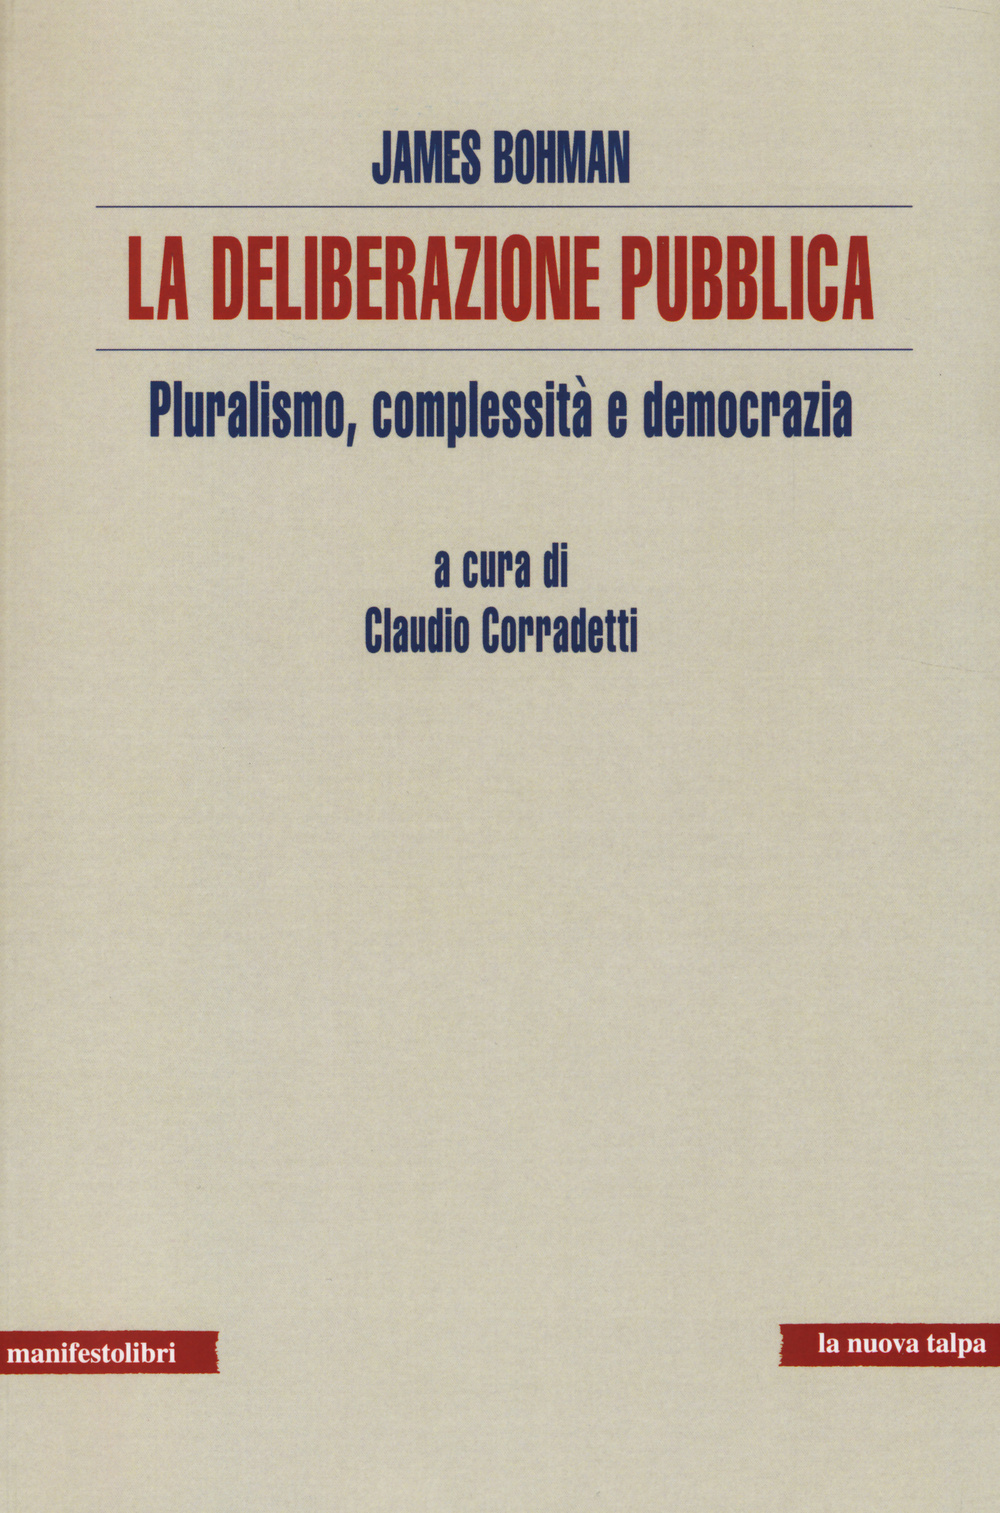 La deliberazione pubblica. Pluralismo, complessità e democrazia